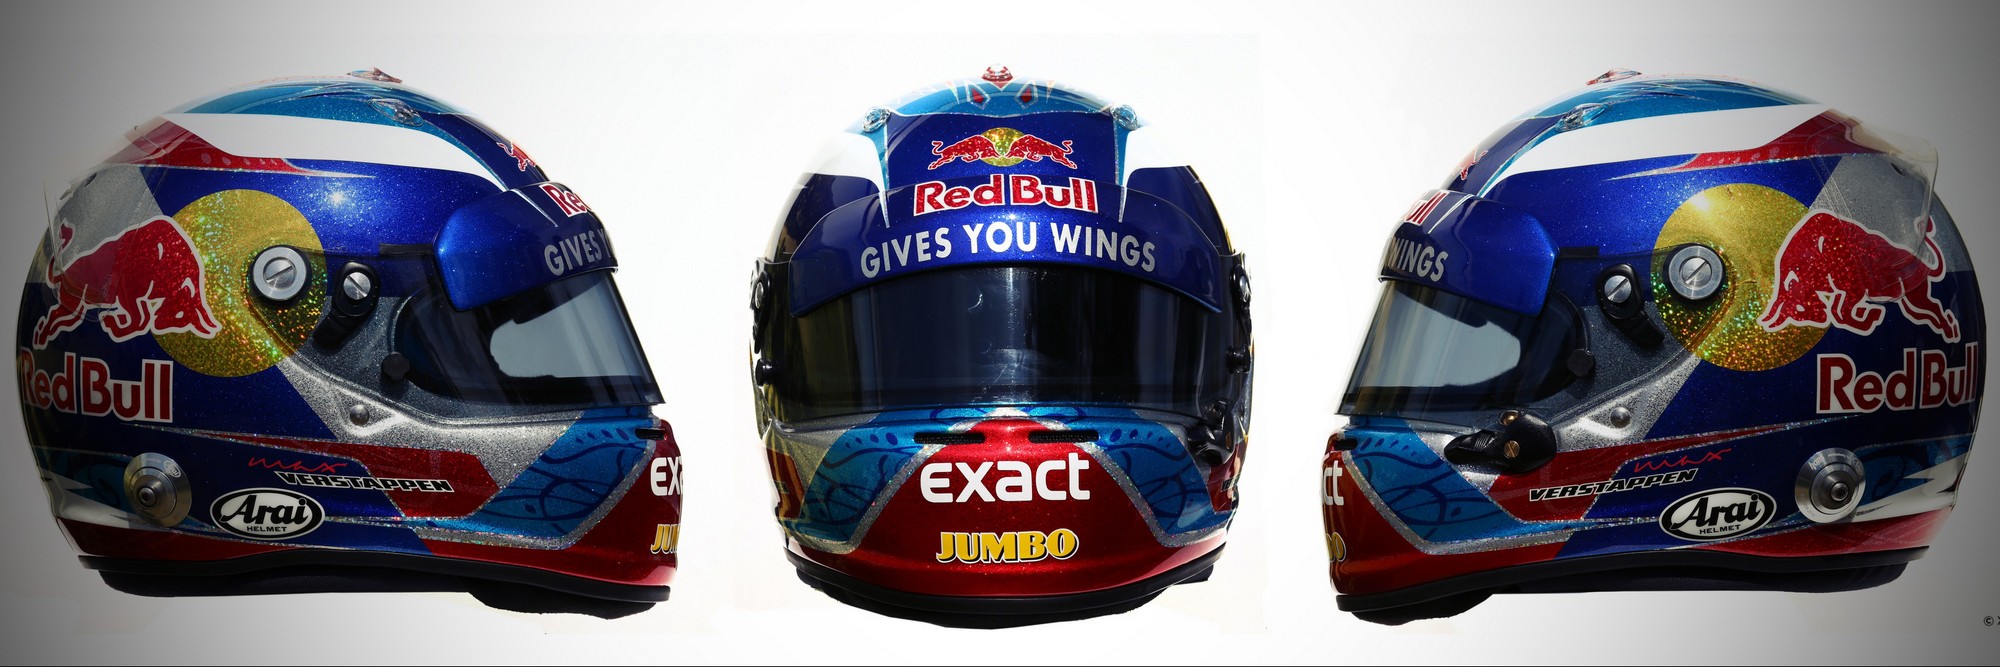 Шлем Макса Ферстаппена на сезон 2016 года | 2016 helmet of Max Verstappen